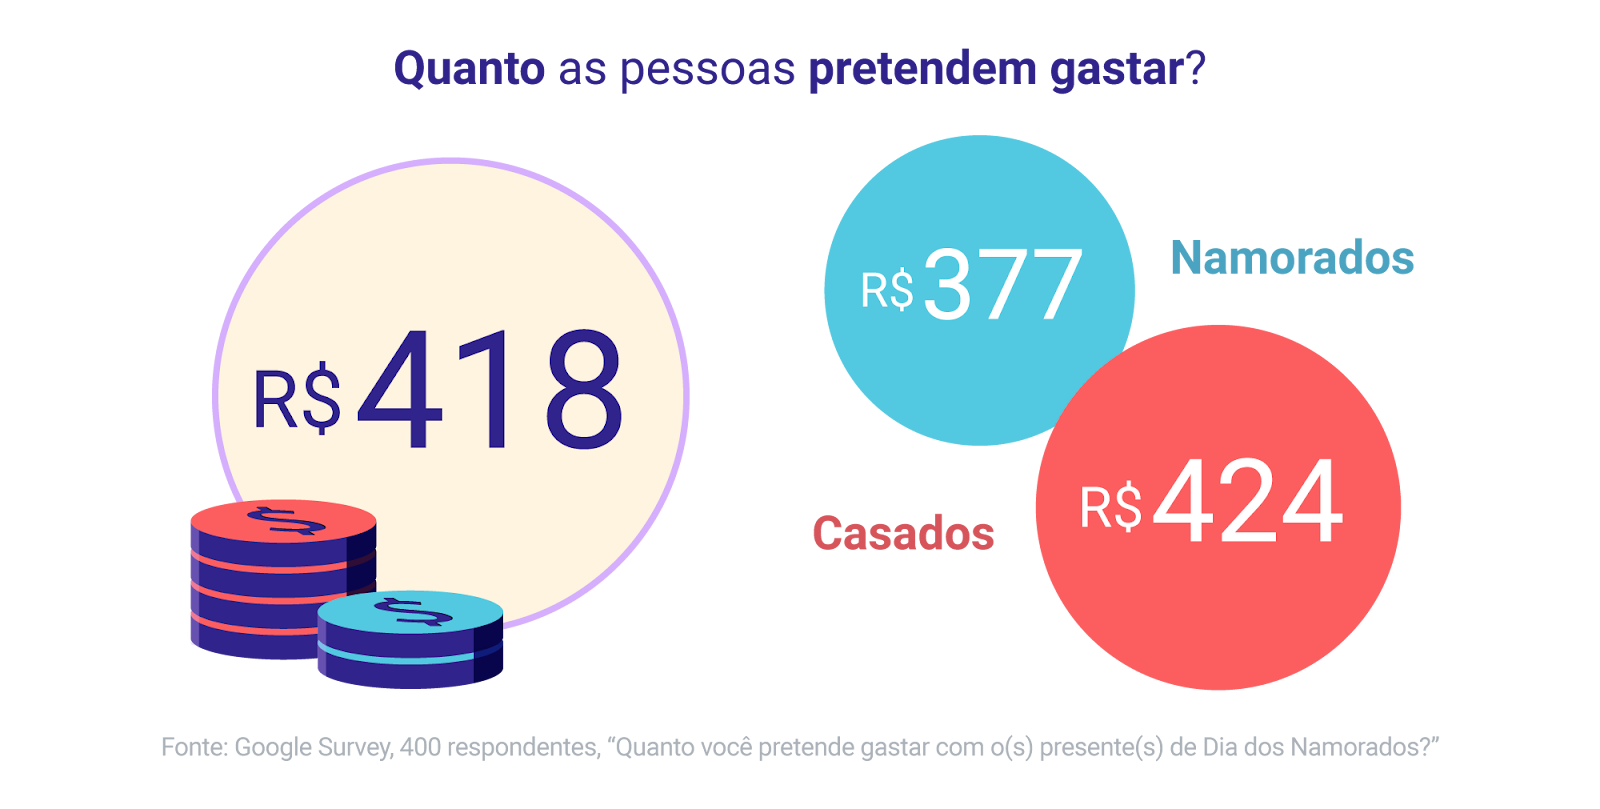 Entre os namorados, o ticket médio previsto é de 377 reais; já entro os casados, o previsto e de 424 reais. A média dos dois públicos é de 418 reais.